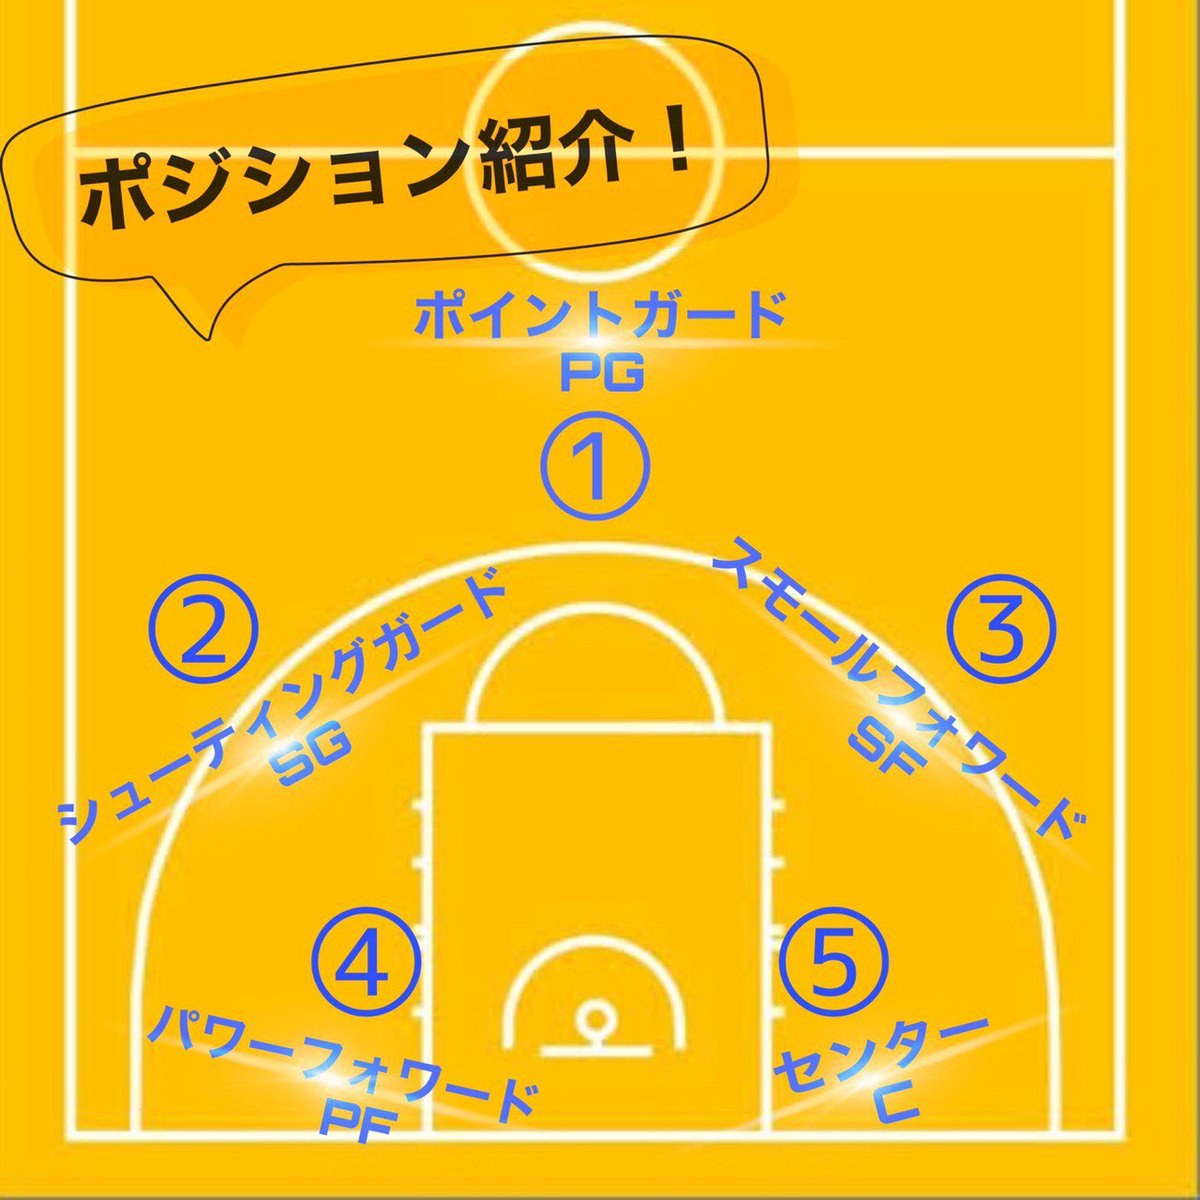 東京大学運動会女子バスケットボール部 ポジション紹介 今日は最後の1人 センターについて紹介します センターはゴール近くで主にプレイするポジションです なんだかこれだけ聞くとおいしいとこどりぽいですが実際は身体をはって場所取りを